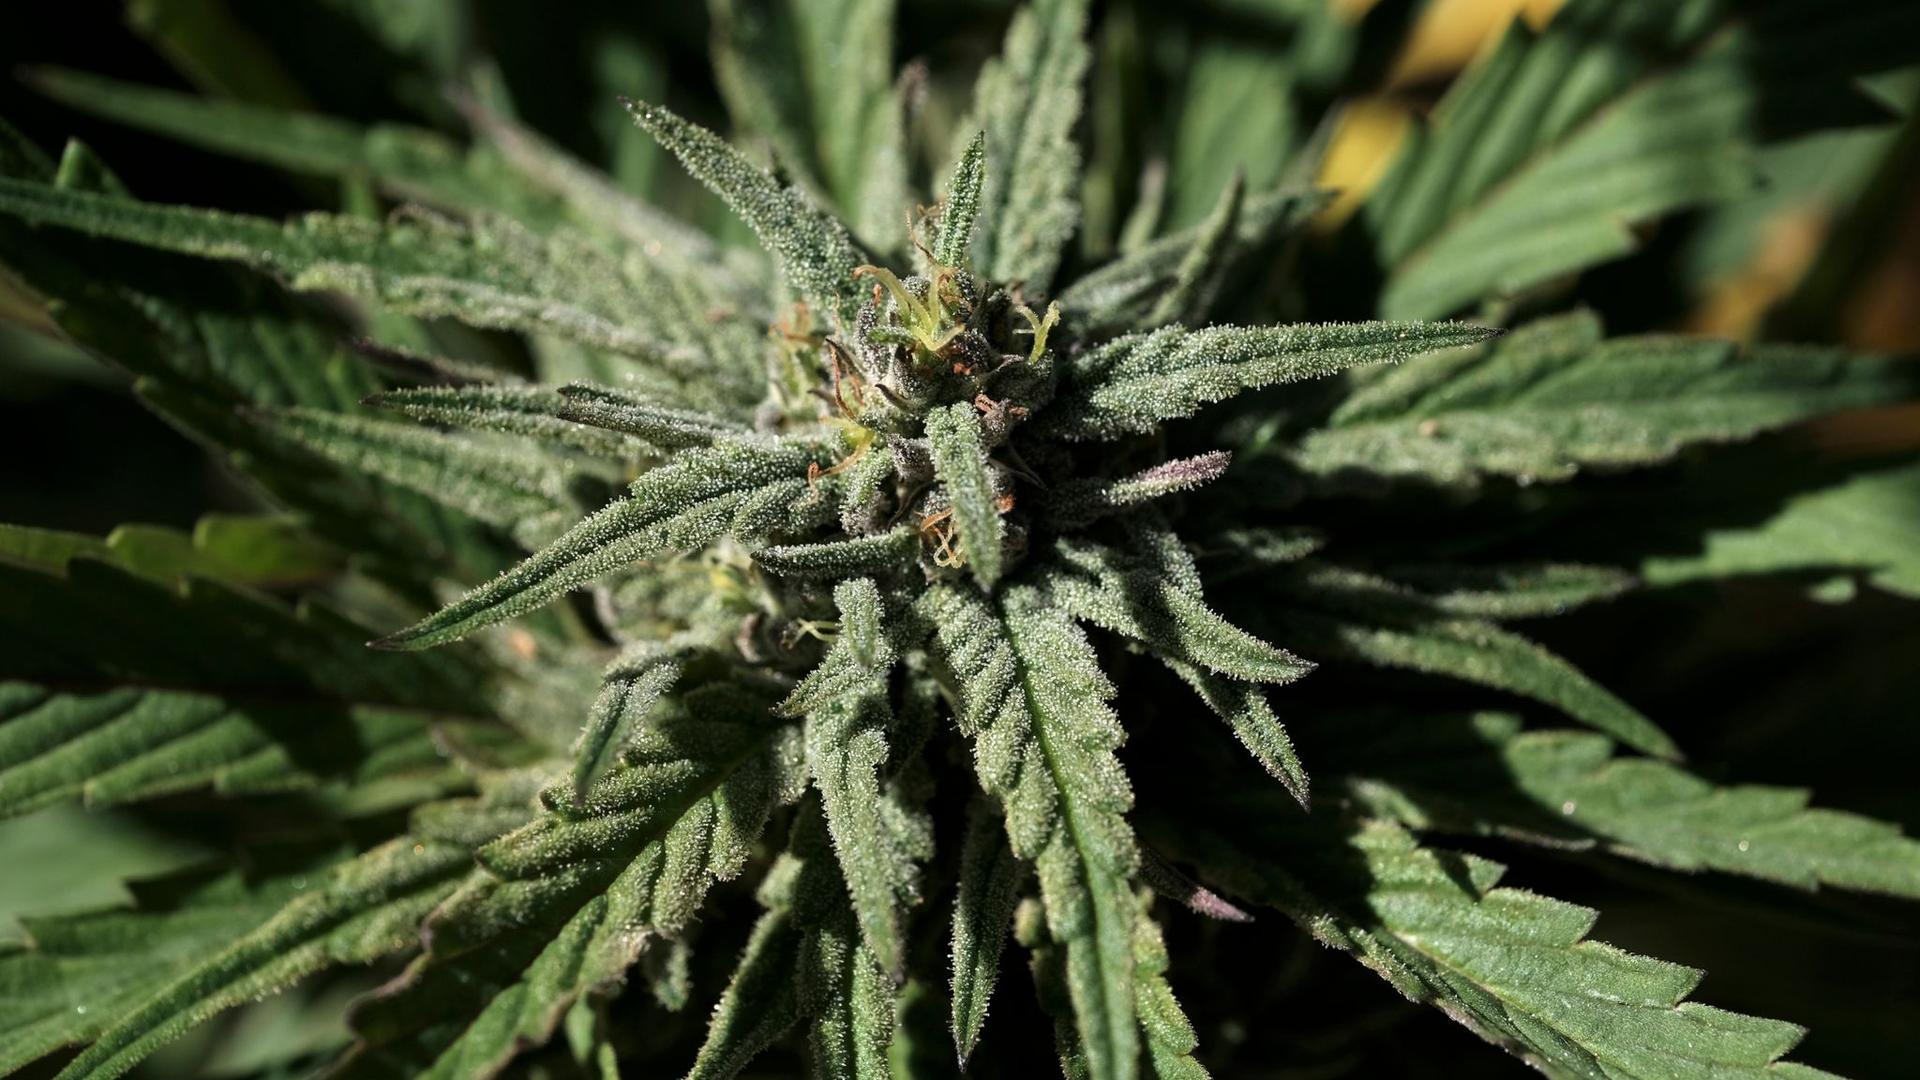 Die aufblühende Knospe einer Marihuanapflanze. Drogenfahnder haben nach monatelangen Ermittlungen 74 Kilogramm Marihuana sichergestellt. 14 Verdächtige sind in Untersuchungshaft.